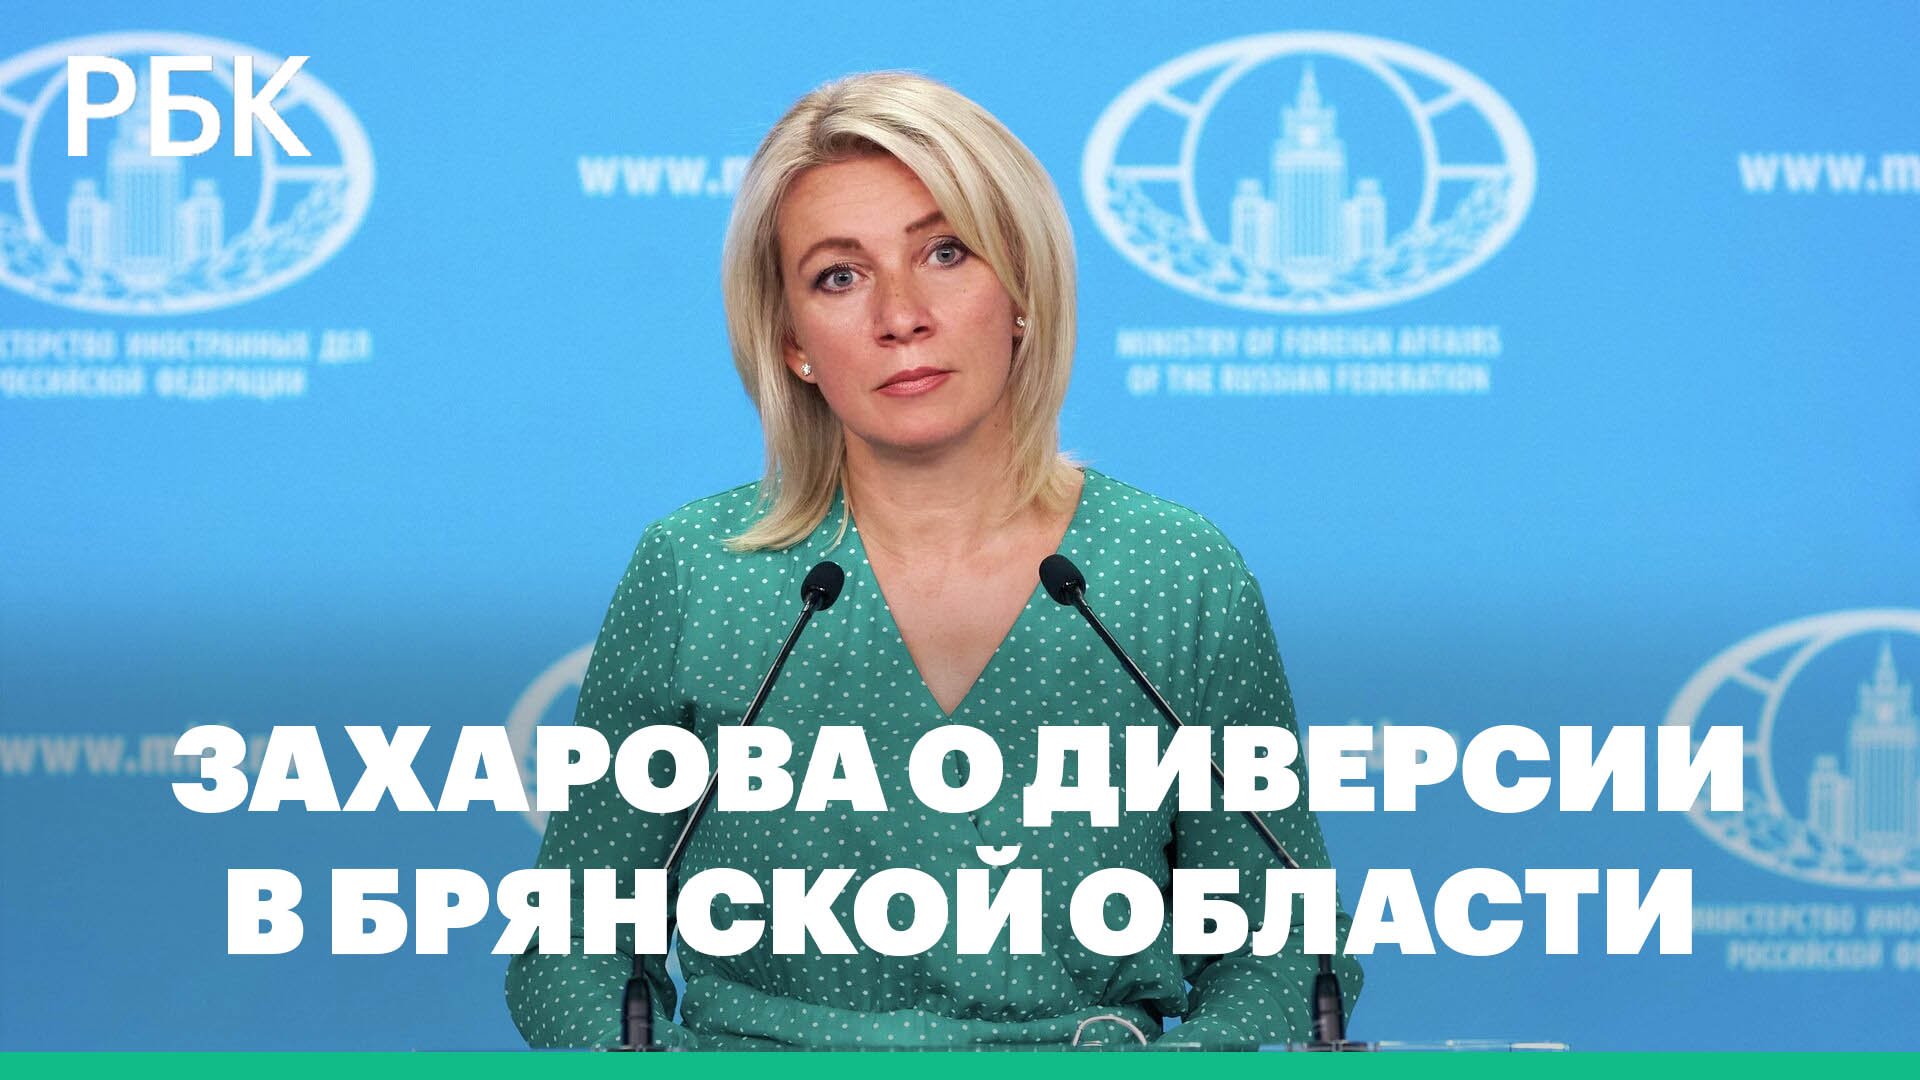 Мария Захарова об итогах встречи G20 и диверсии в Брянской области